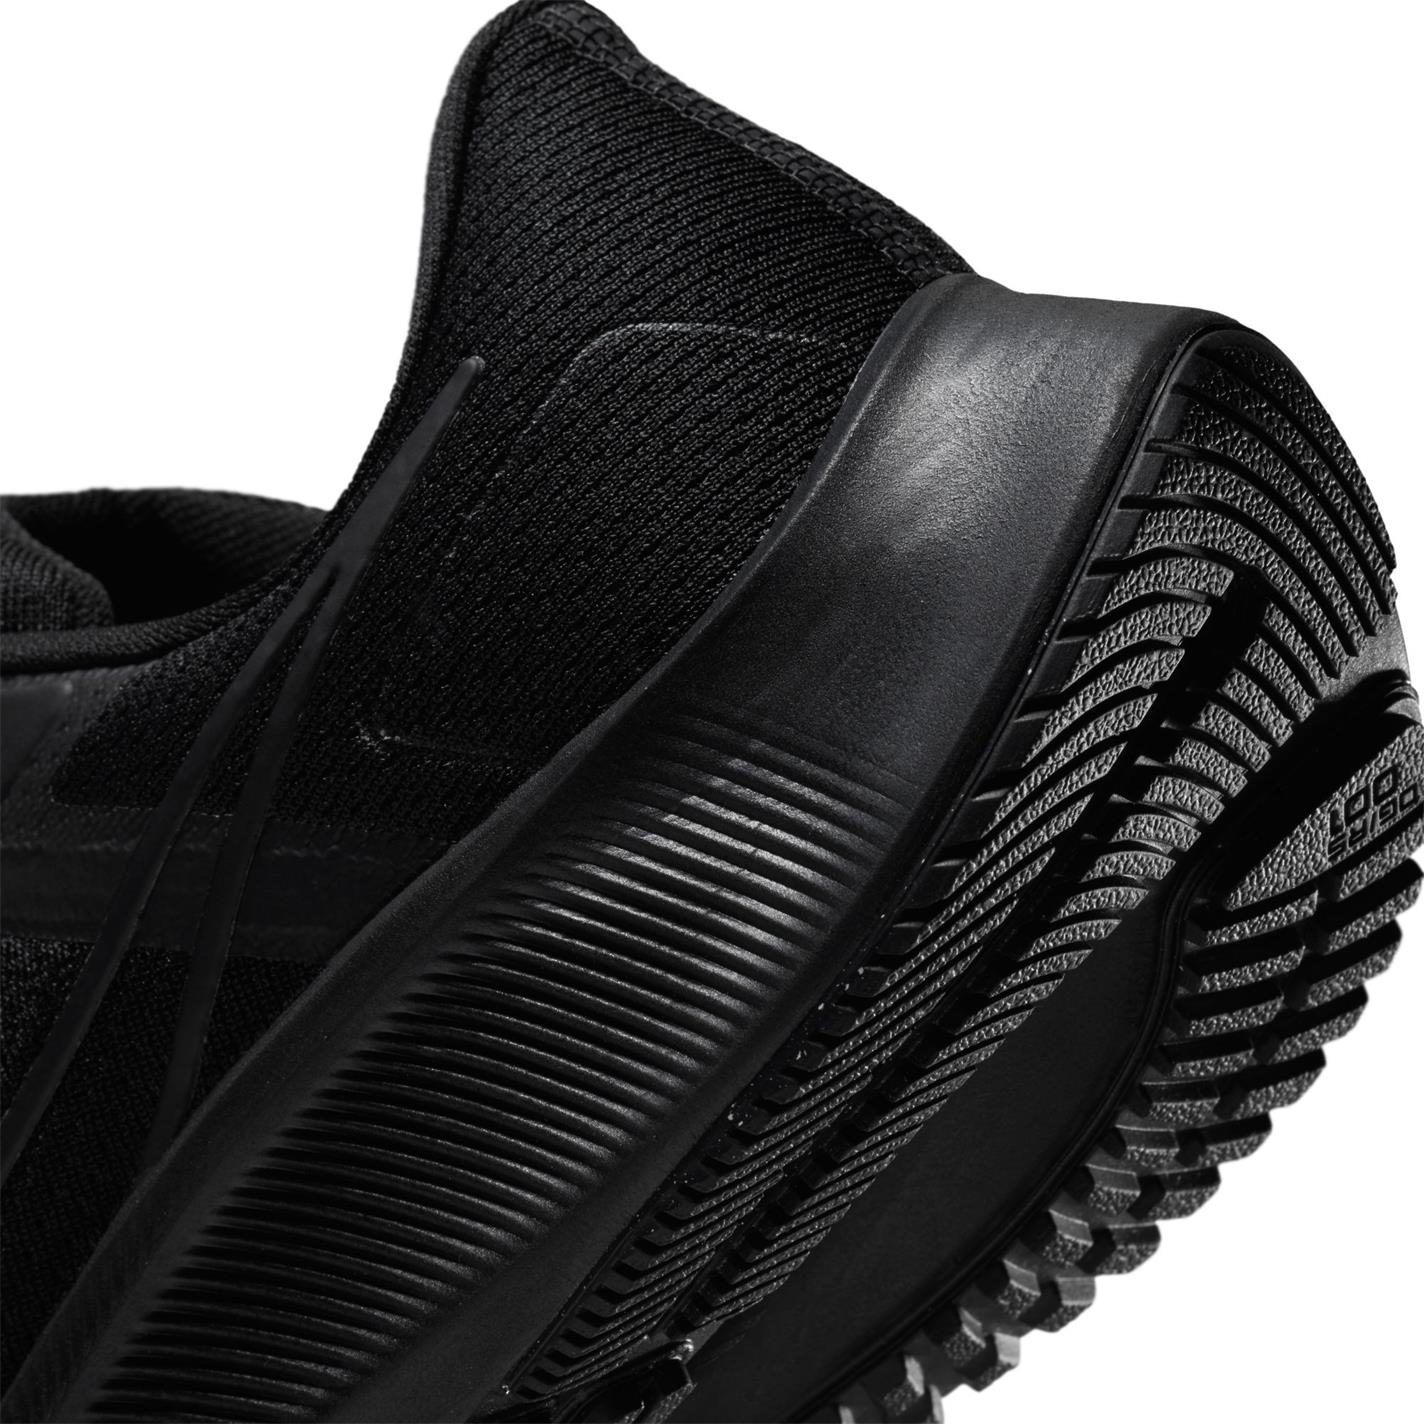 Adidasi alergare Nike Air Zoom Pegasus 38 pentru Barbati negru gri inchis galben